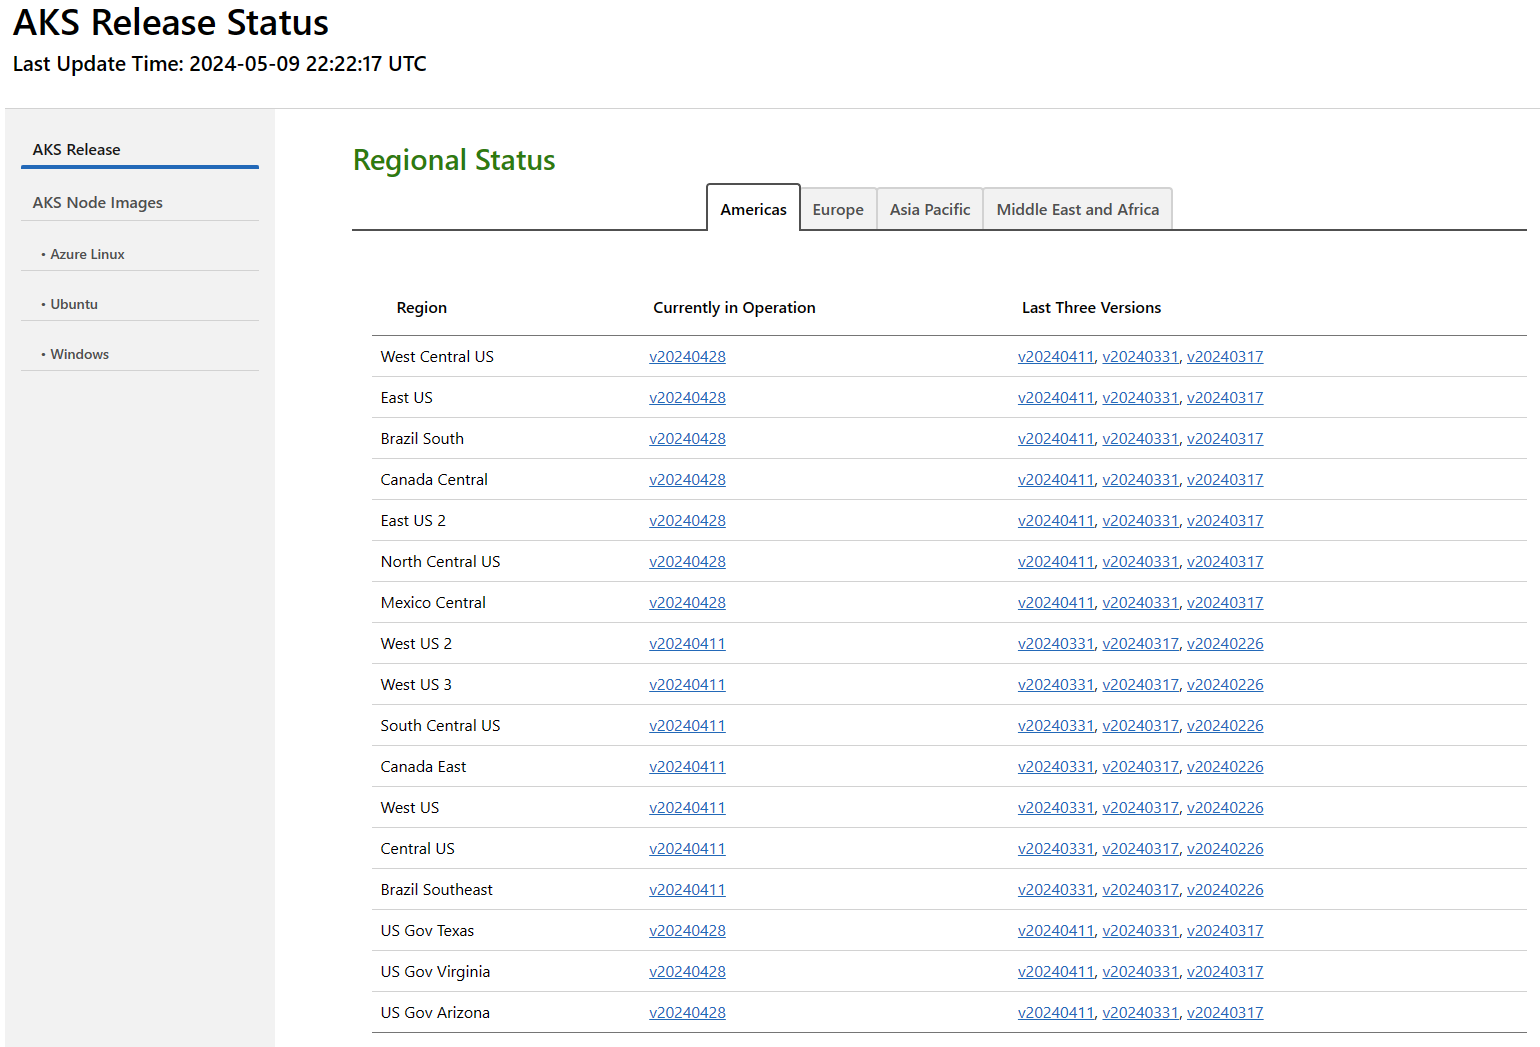 Captura de pantalla de la tabla de estado regional del rastreador de versiones de AKS que se muestra en un explorador web.